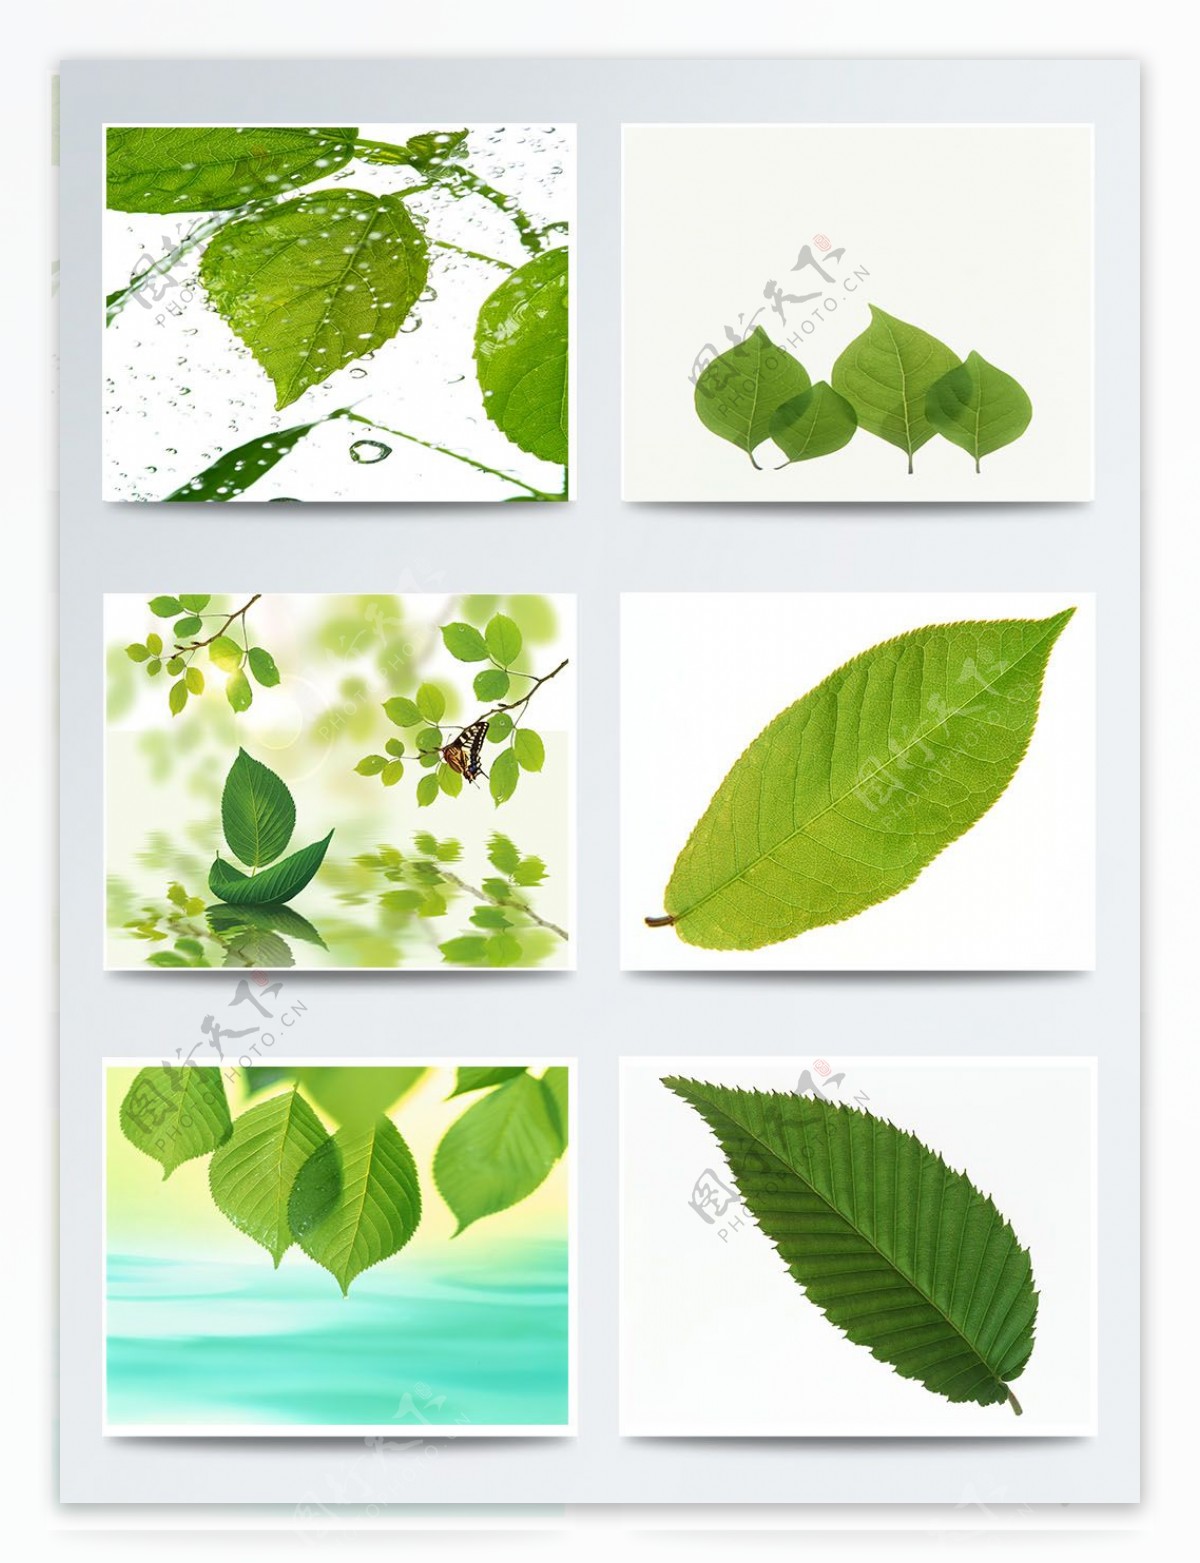 二十四节气立春绿色树叶元素图案